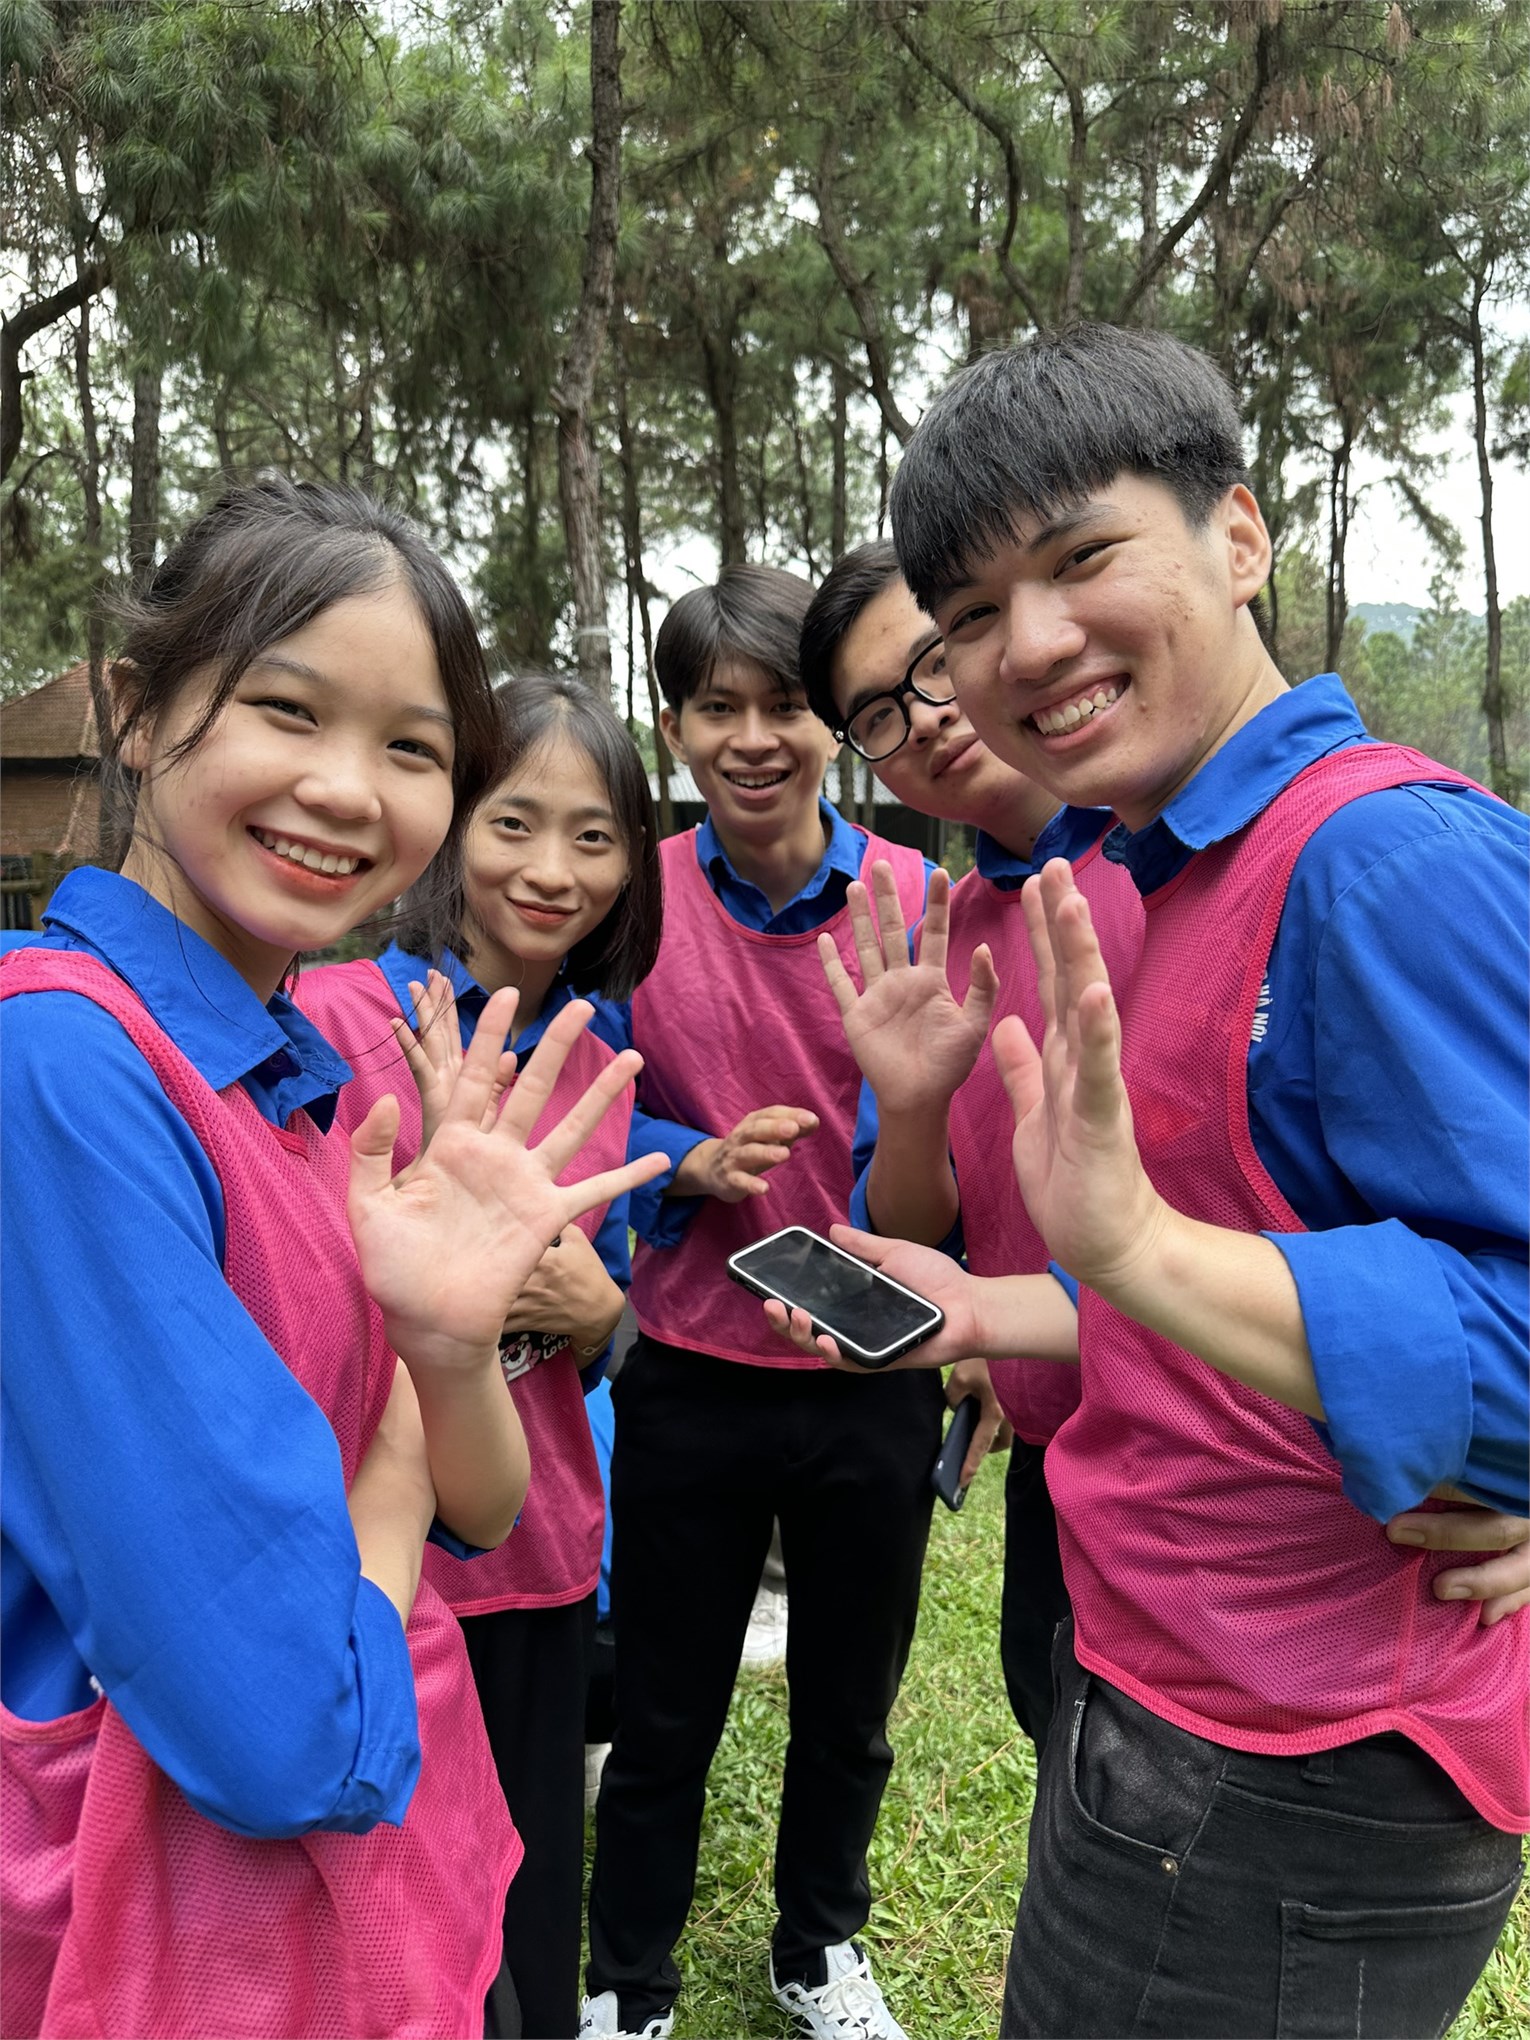 Sôi nổi - Nhiệt huyết - Đoàn kết: Cuộc thi Thủ lĩnh sinh viên HaUI 2023